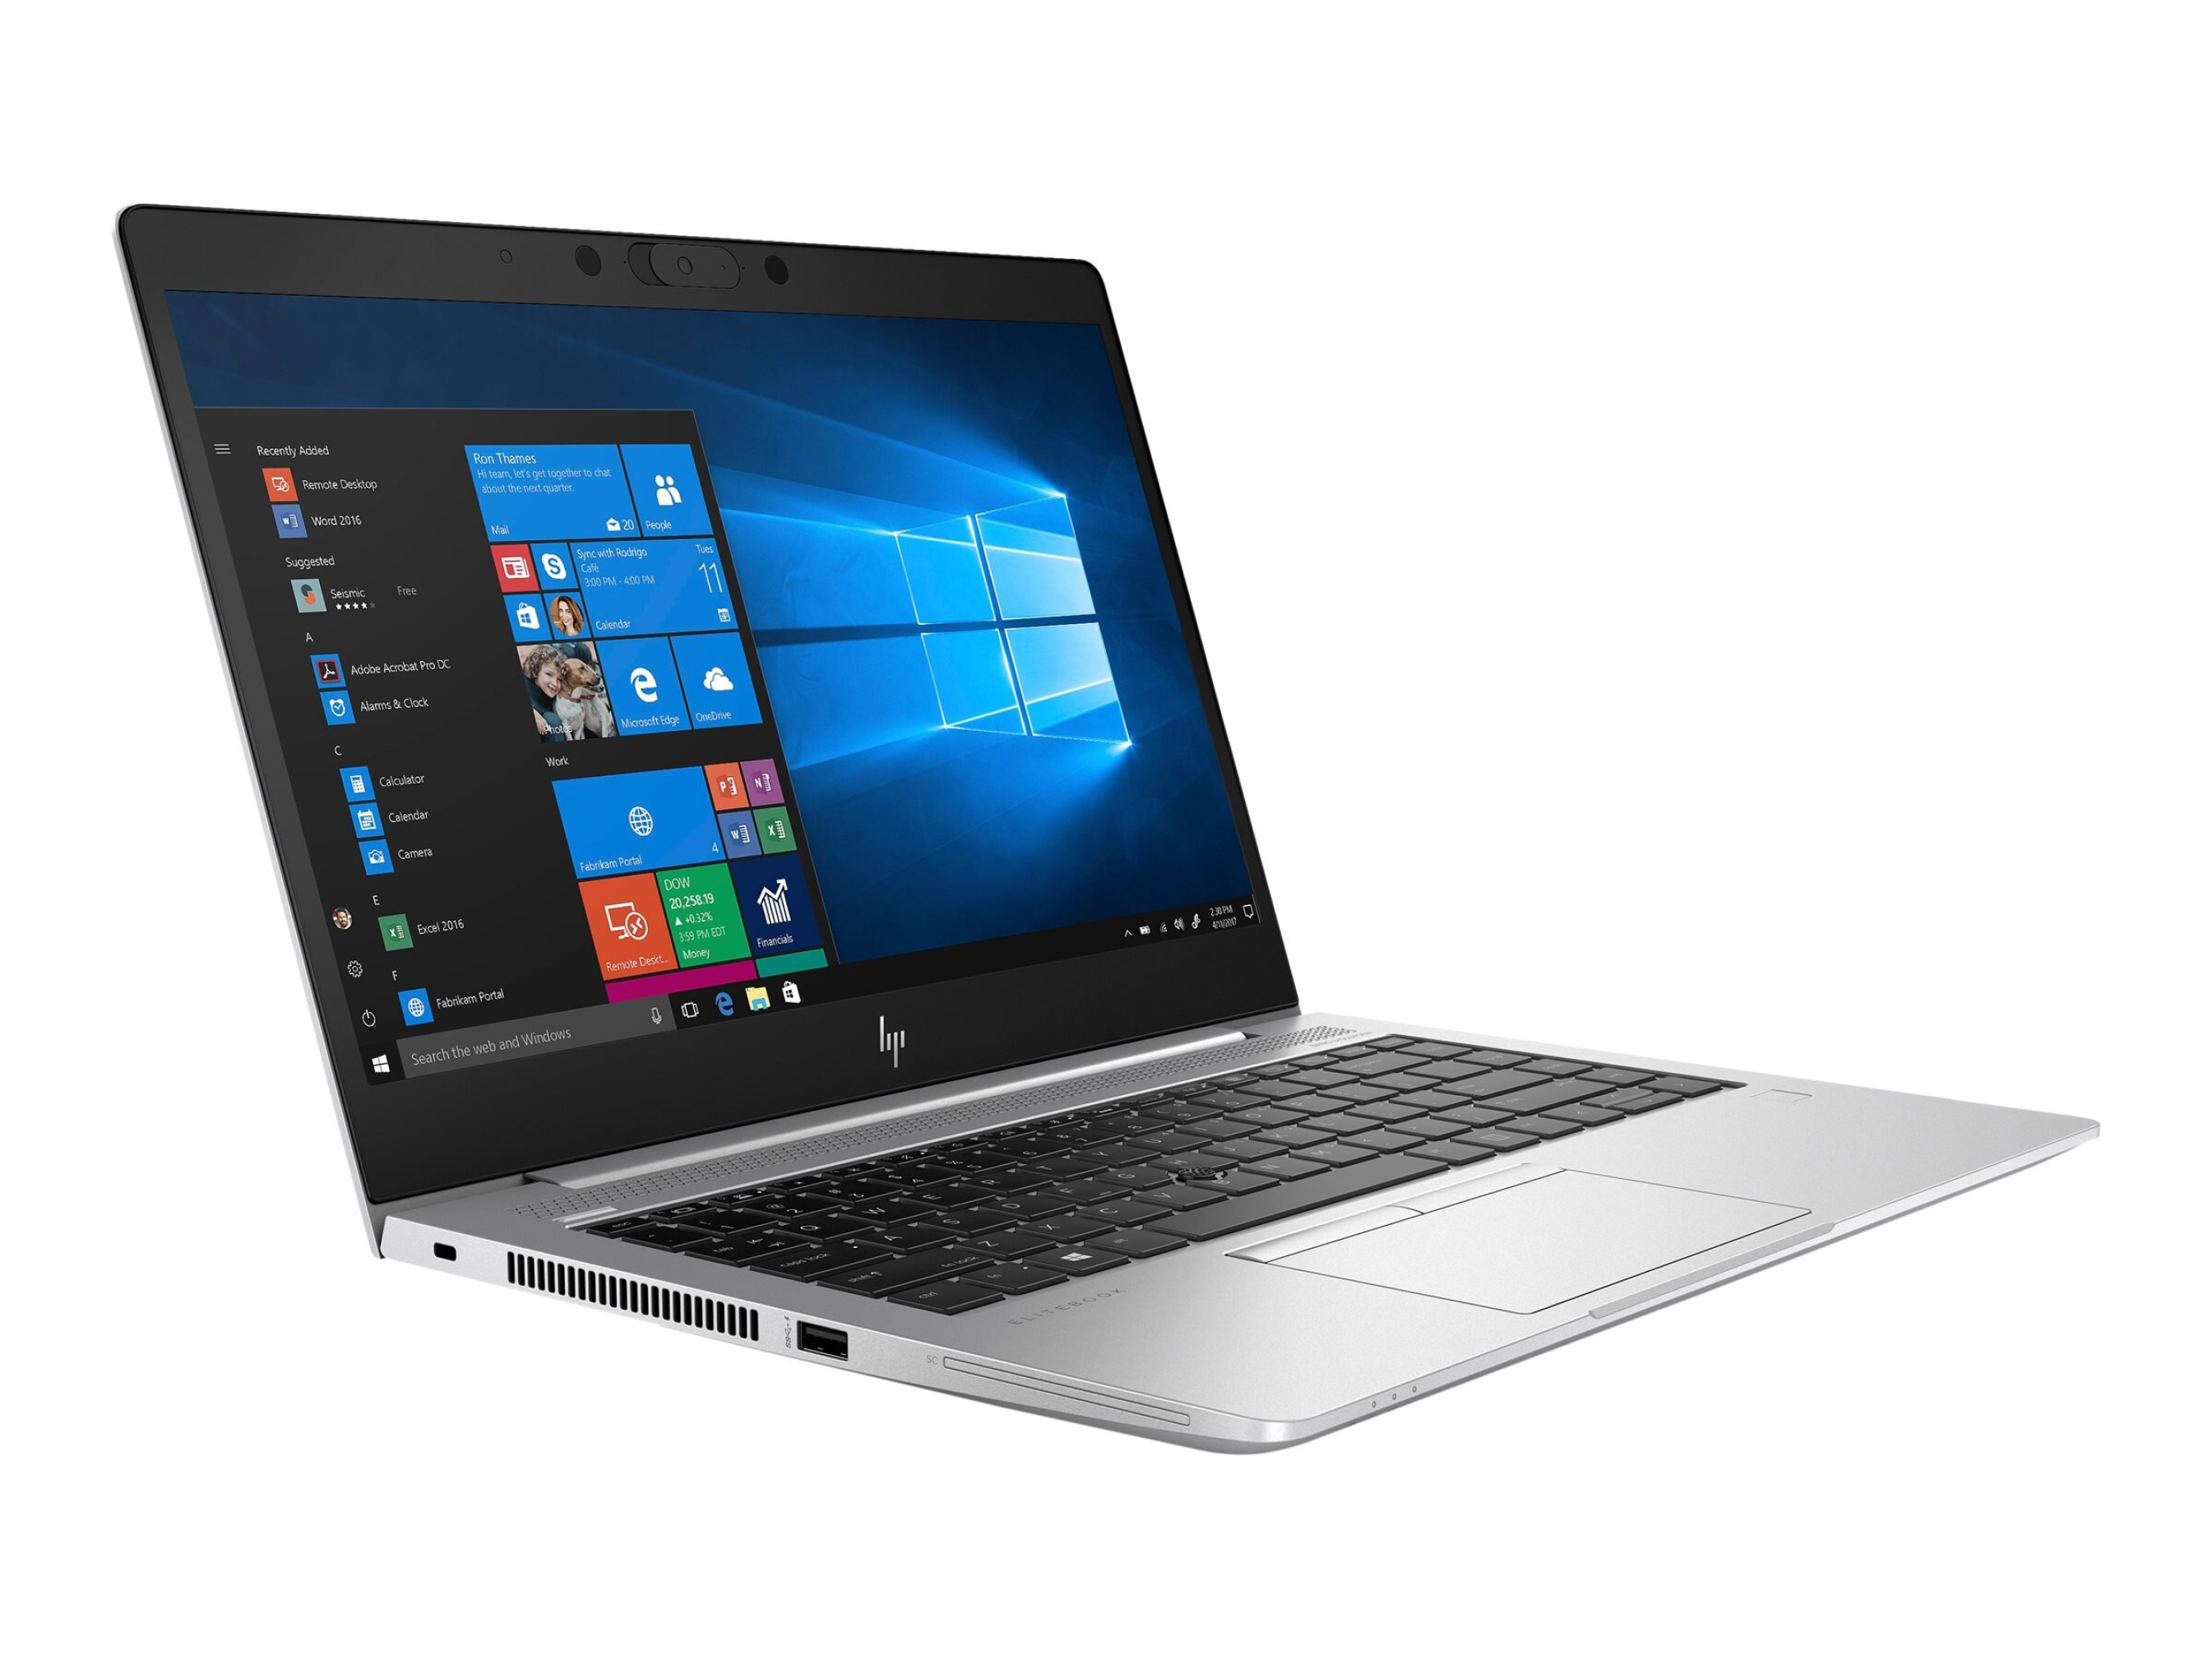  لپ تاپ HP EliteBook 745 G6 Notebook Ryzen 5 5300U AMD 2GB | لاکچری لپ تاپ 